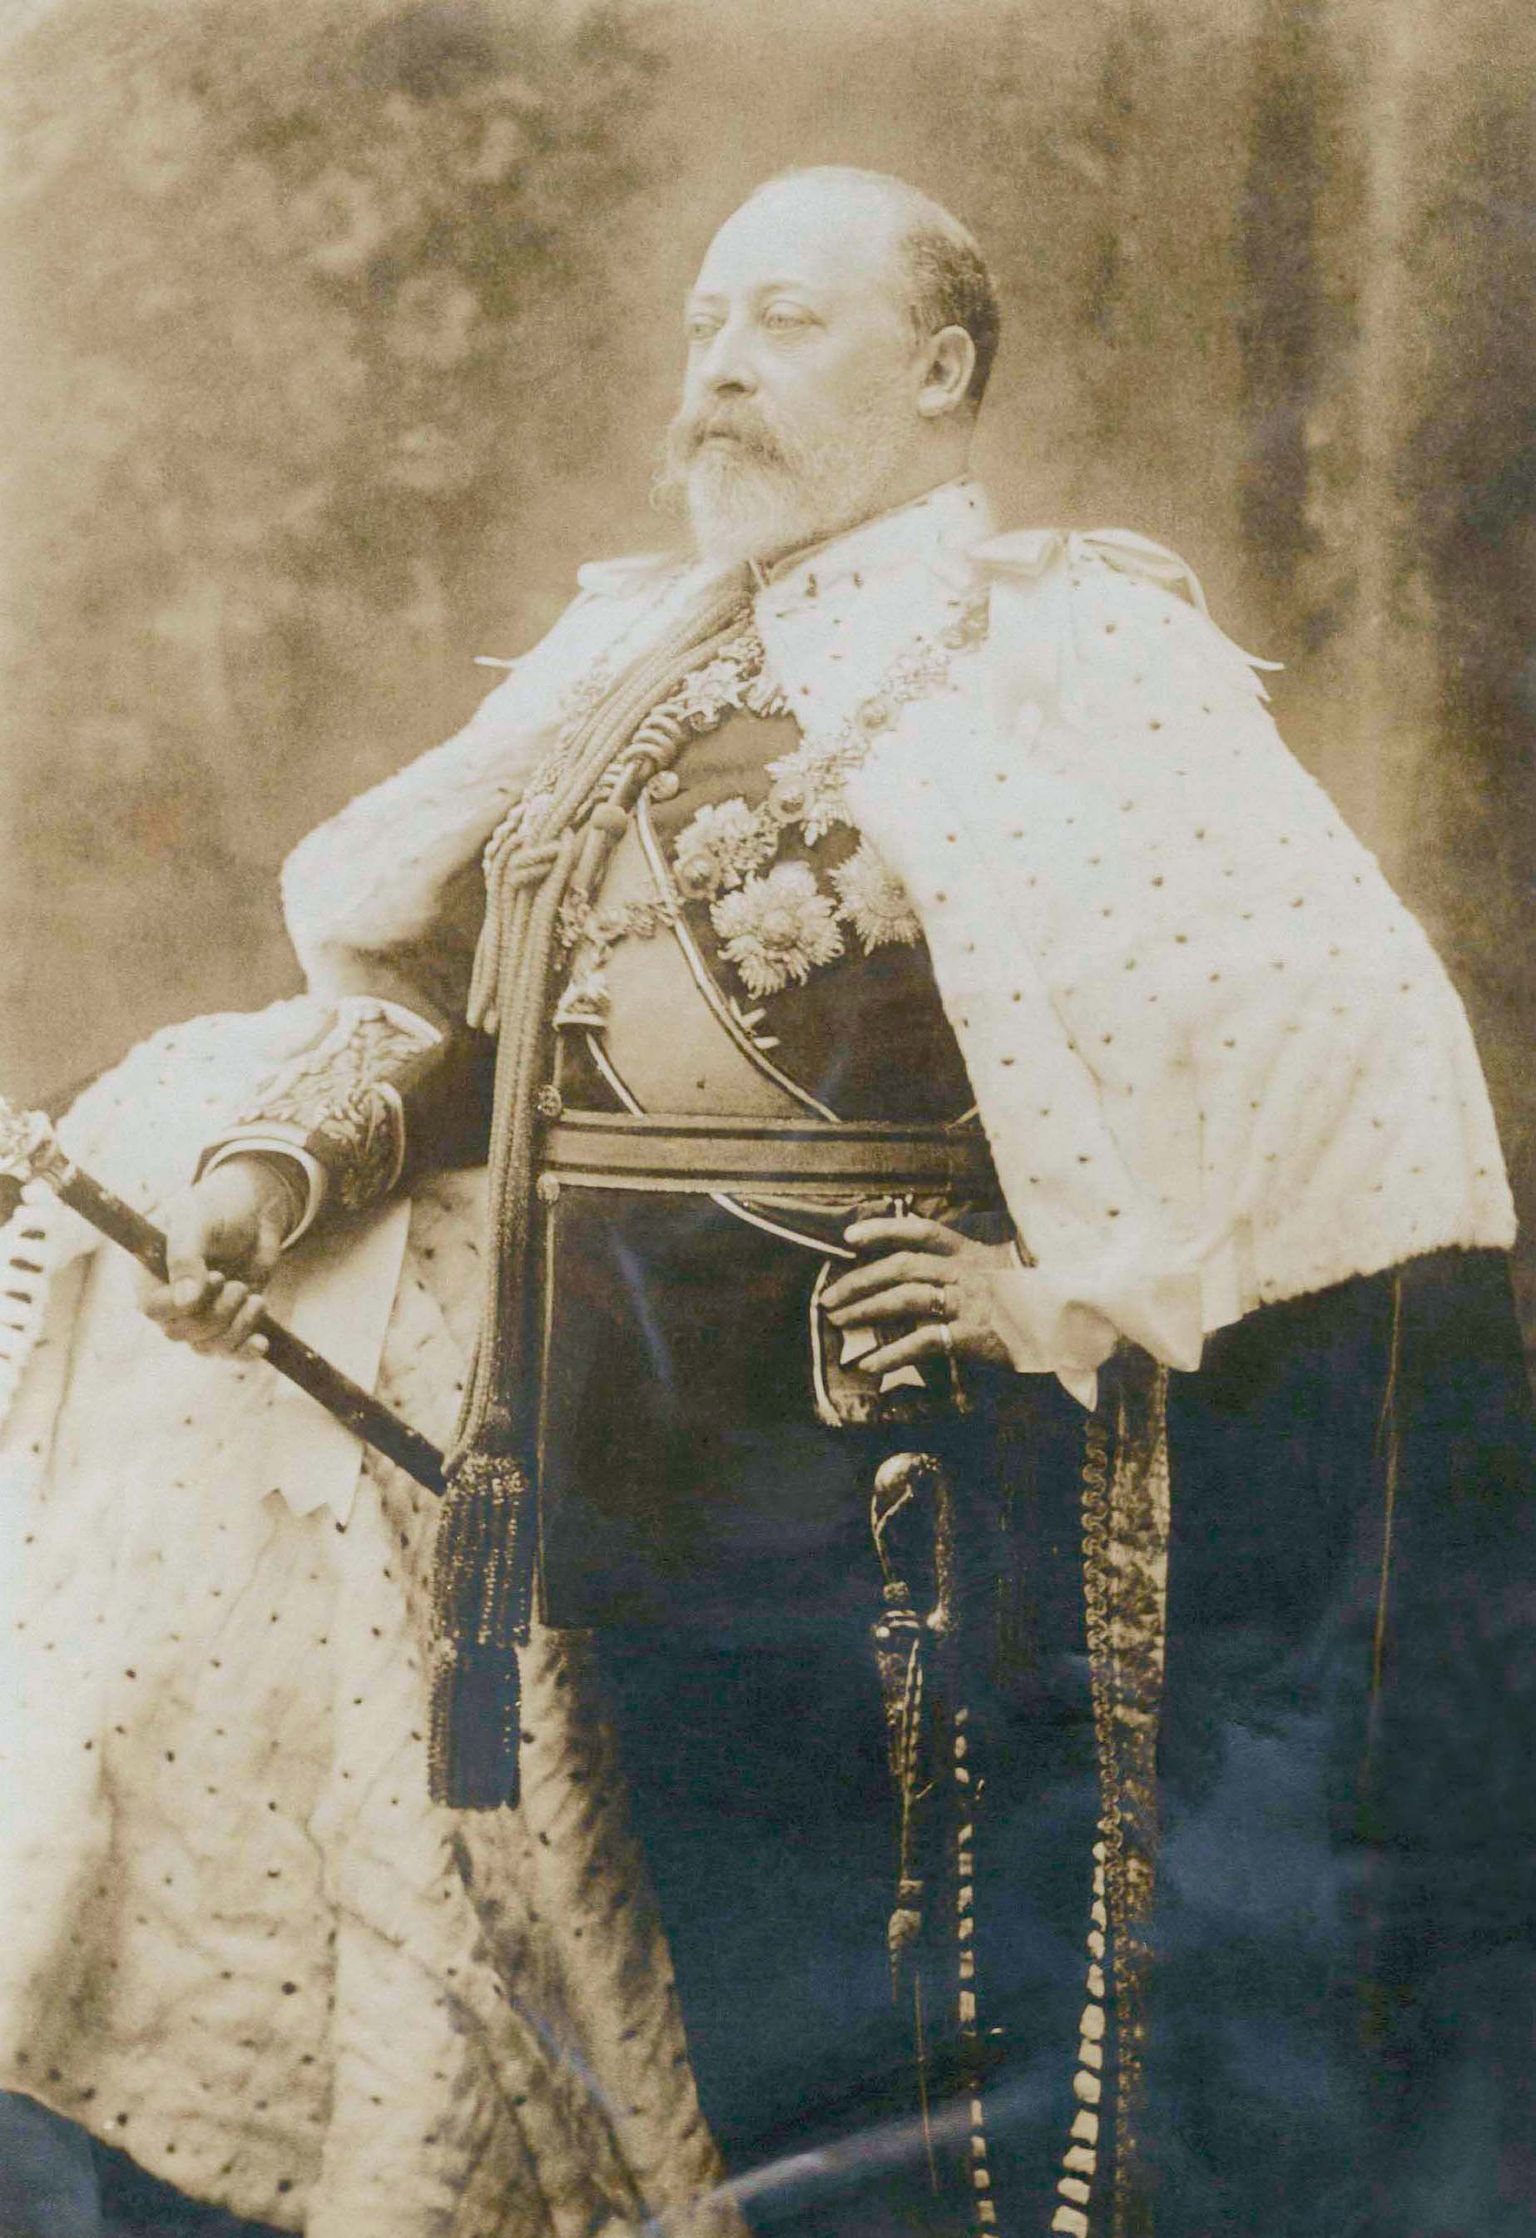 Briti kuningas Edward VII umbes 1901 tehtud fotol. Eluaeg 1841–1910 ja troonil 1901–1910